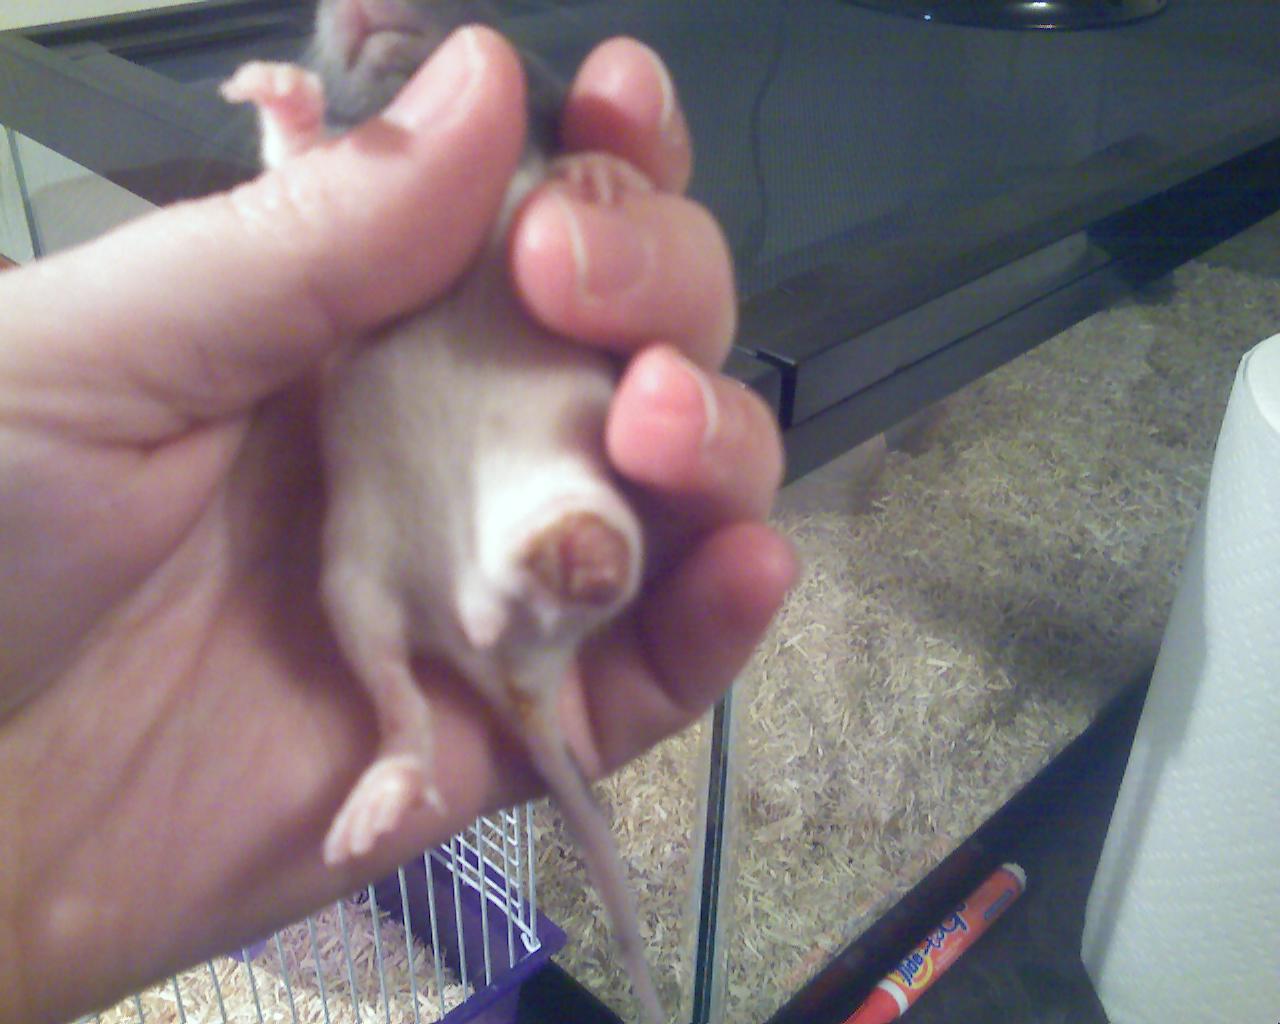 Baby Rat